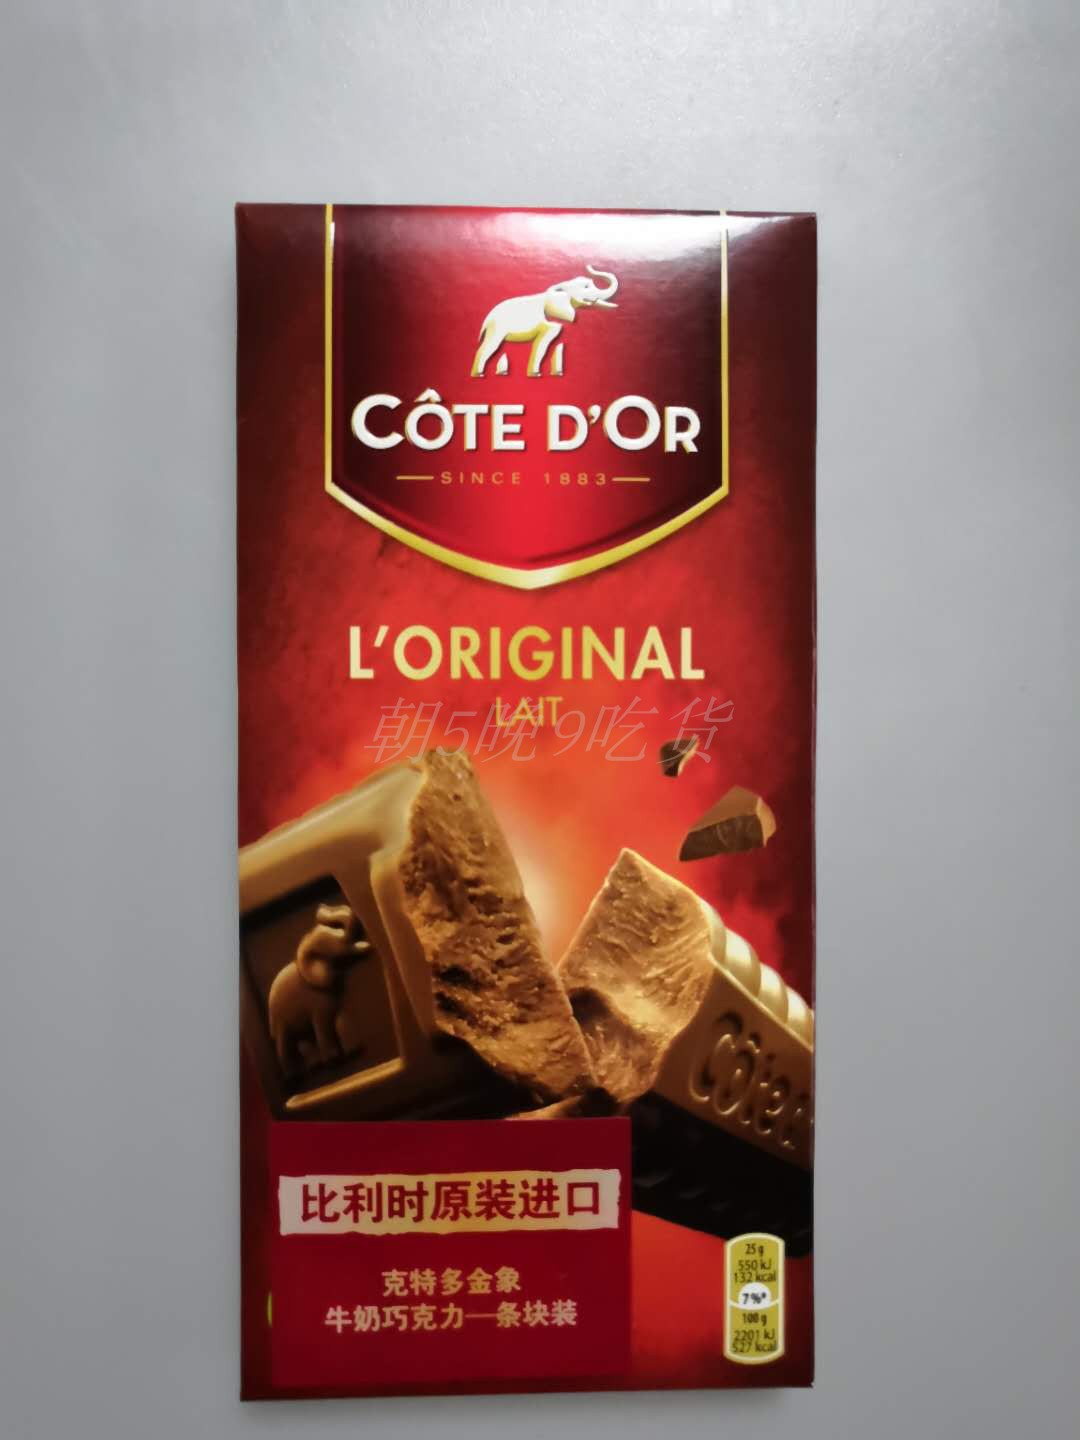 比利时进口克特多金象黑巧克力200g条块装黑巧克力 19.06